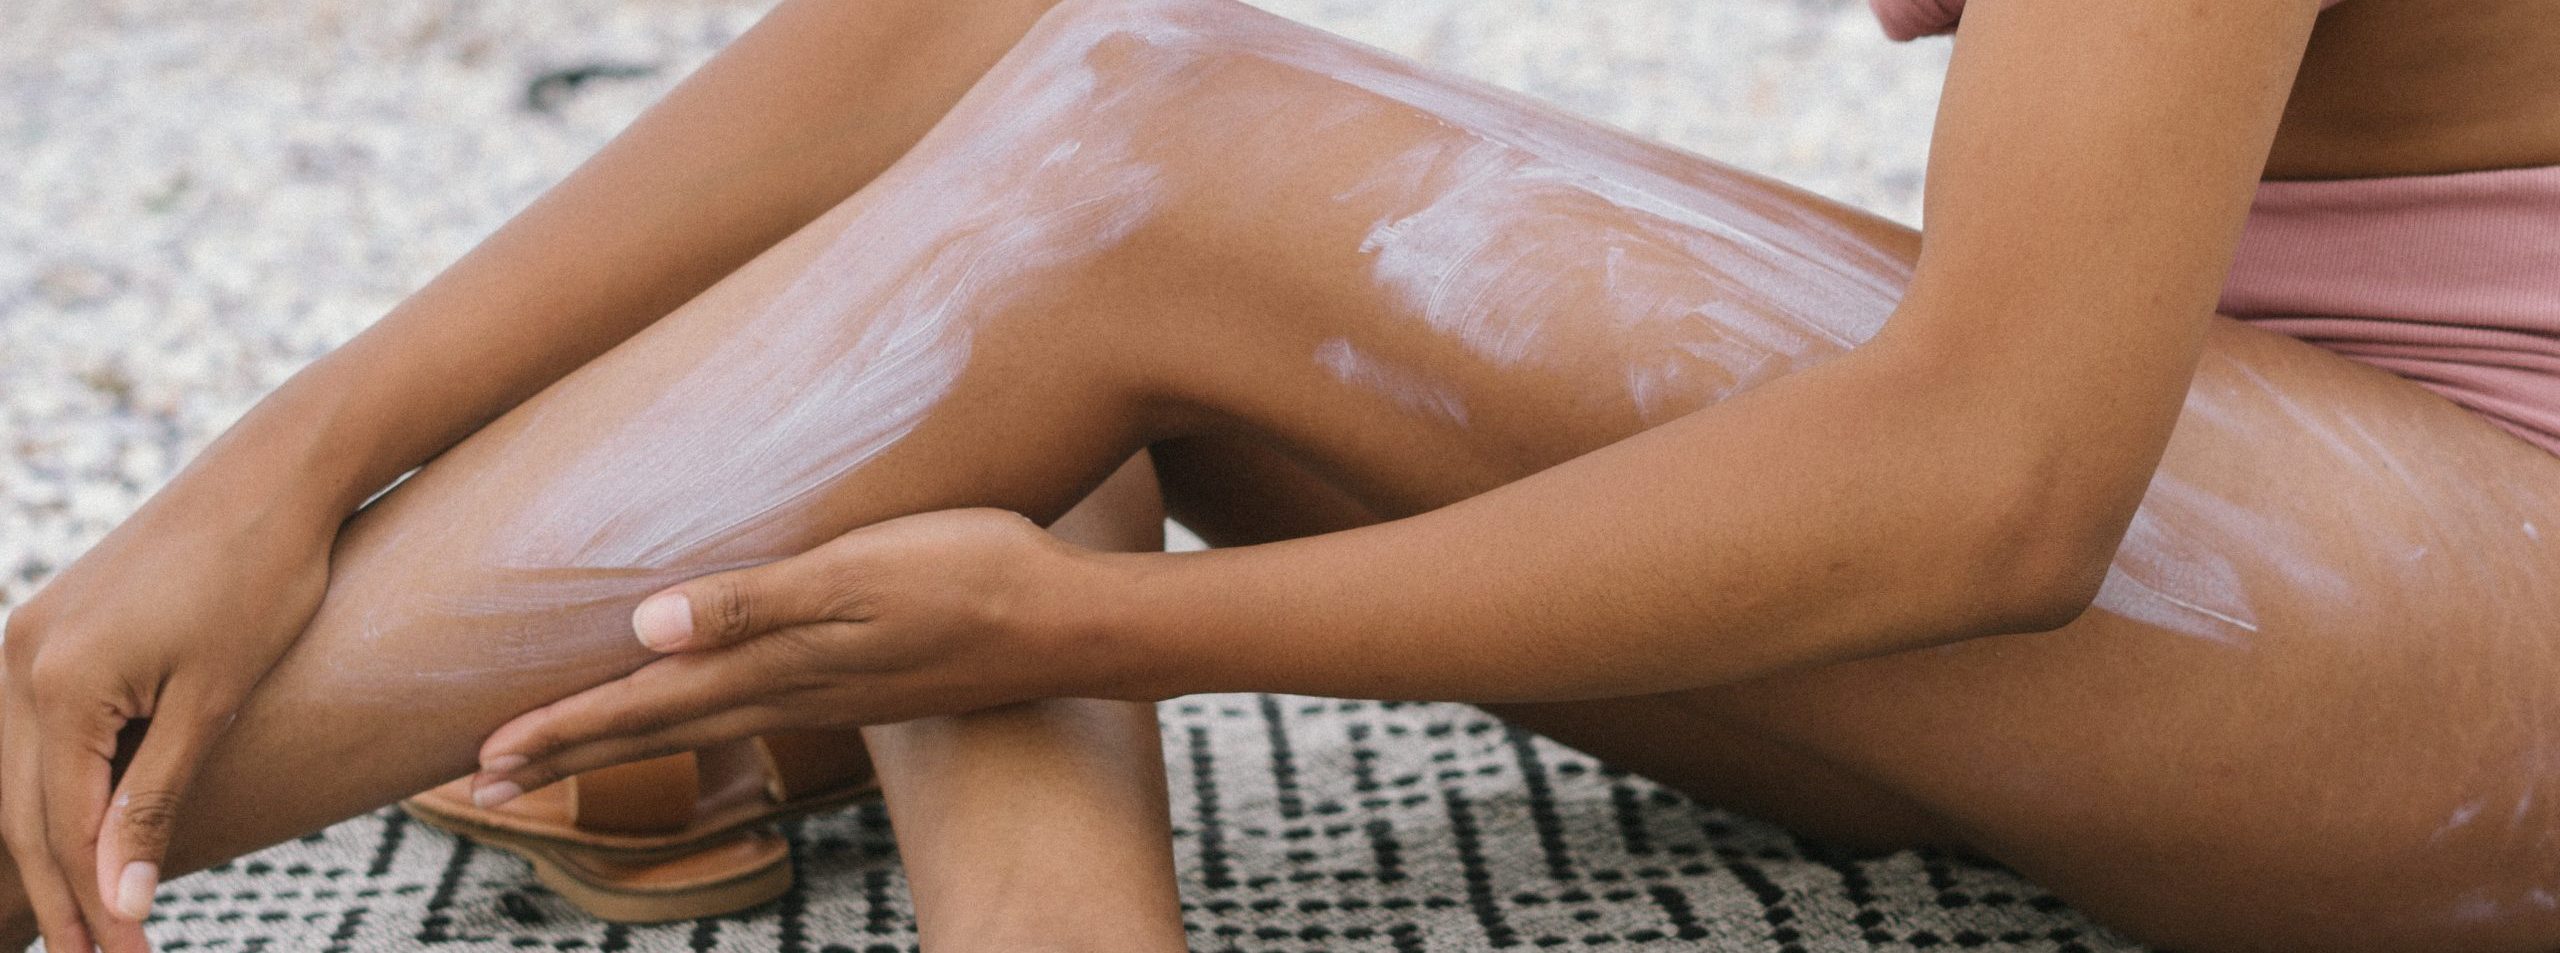 A woman applies sun cream to her body.